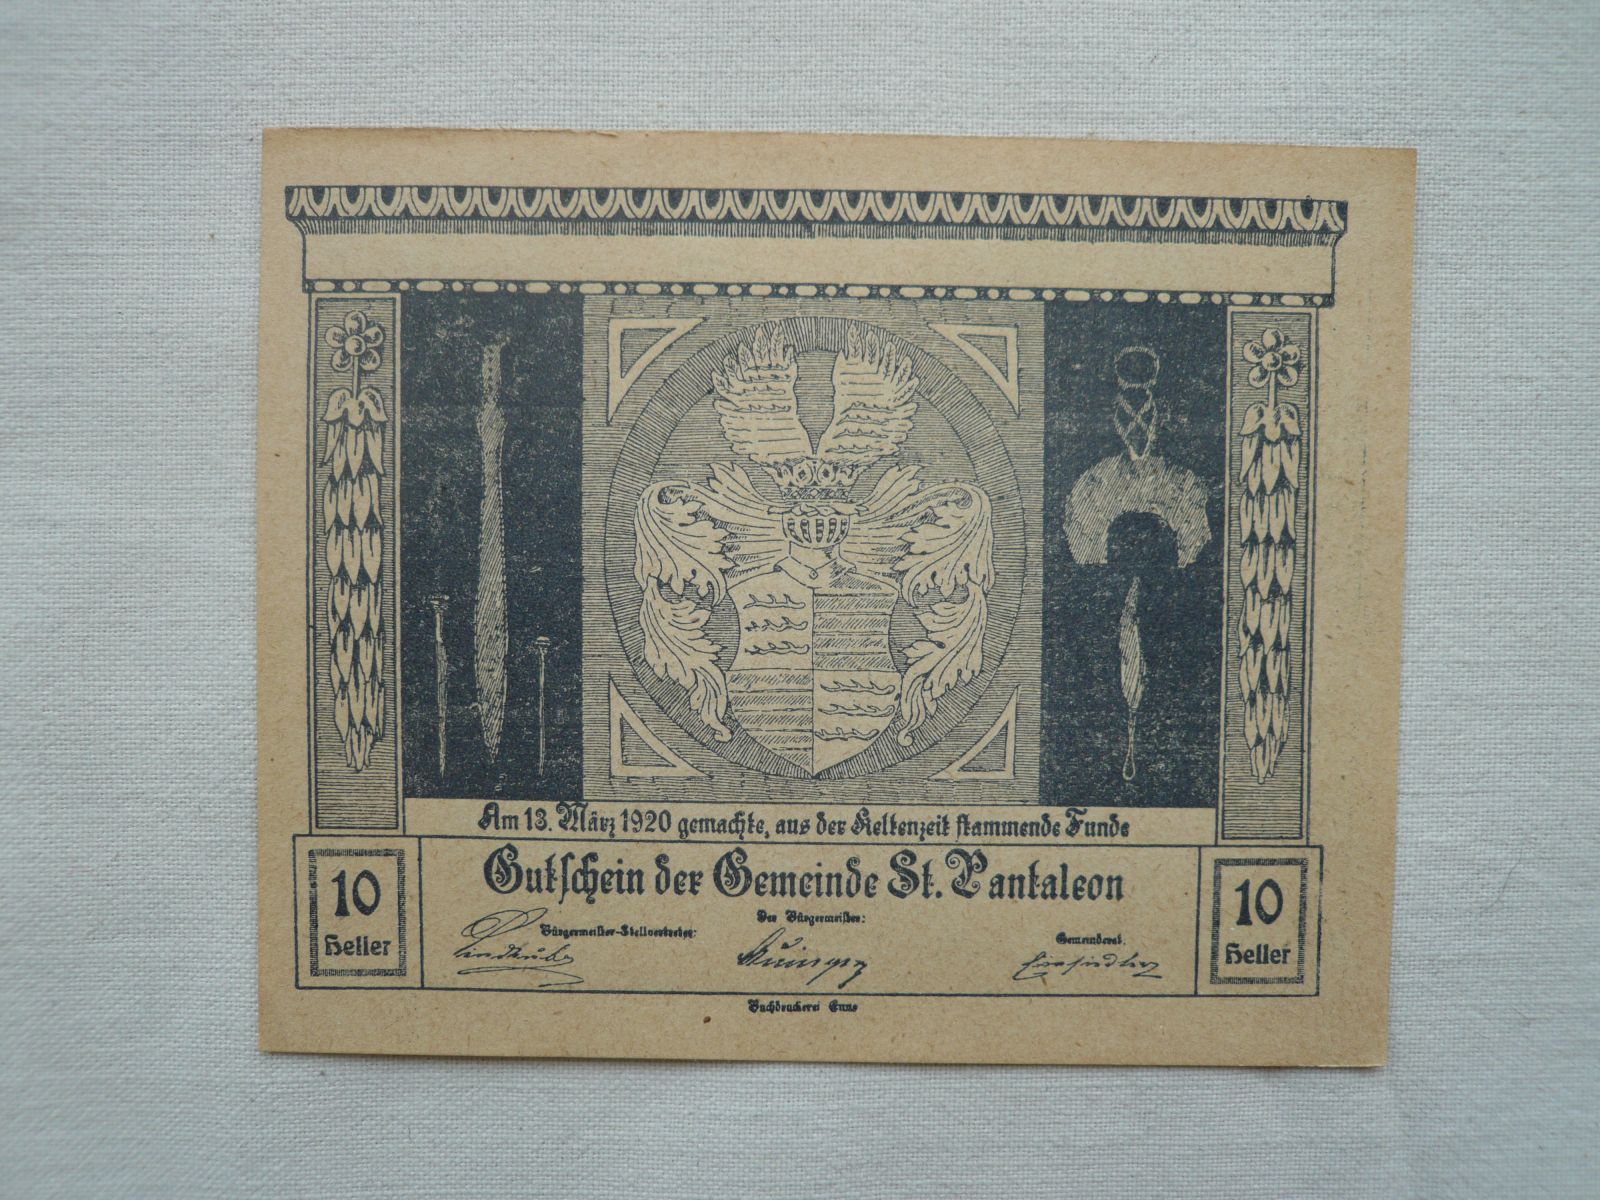 10 Heller, St. Pantaleon, 1920, Rakousko